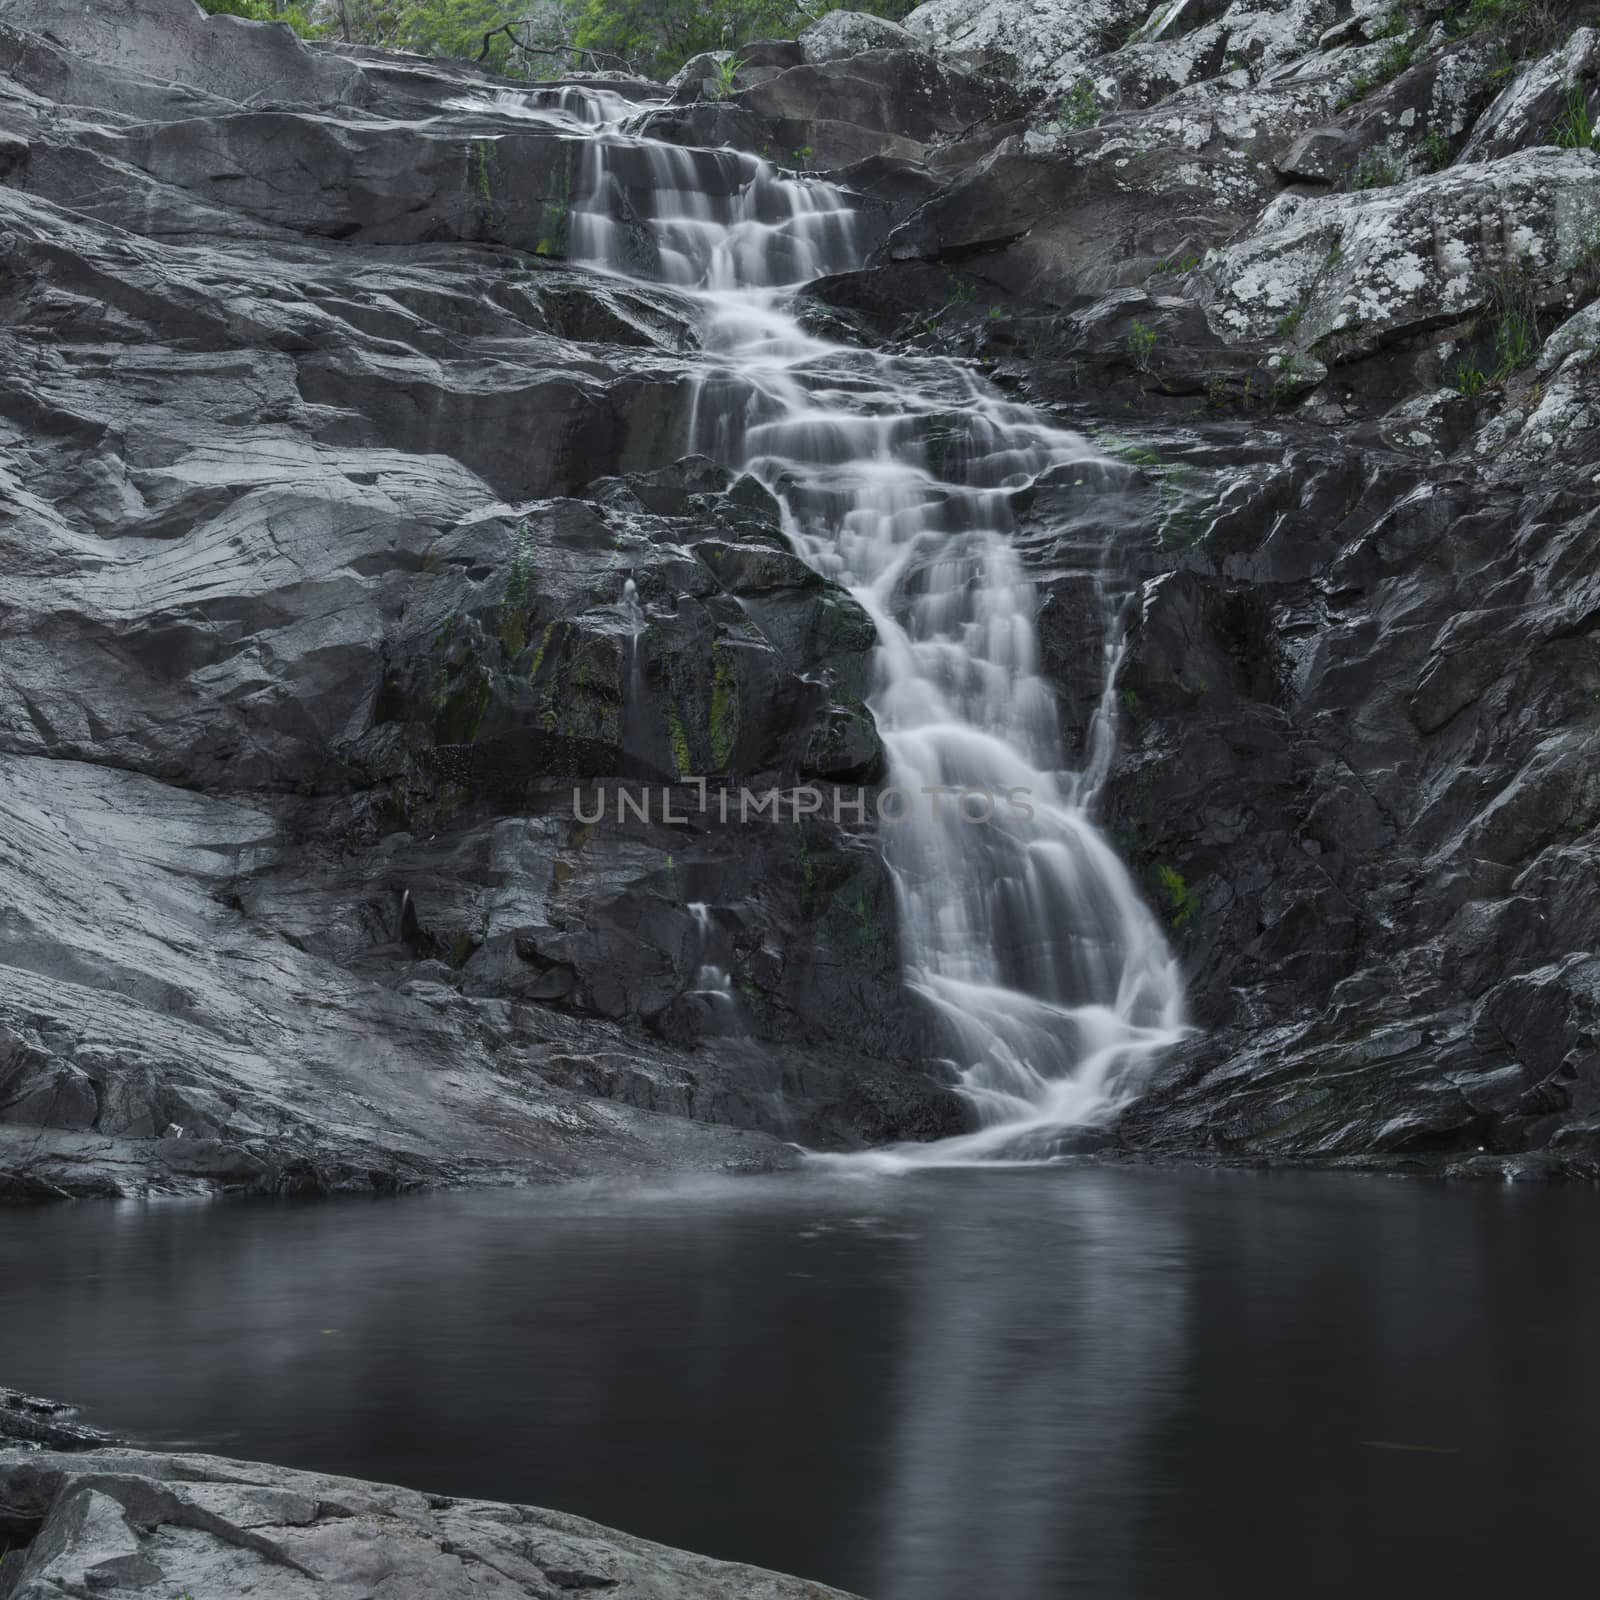 Cedar Creek waterfall in Mount Tambourine, Queensland.